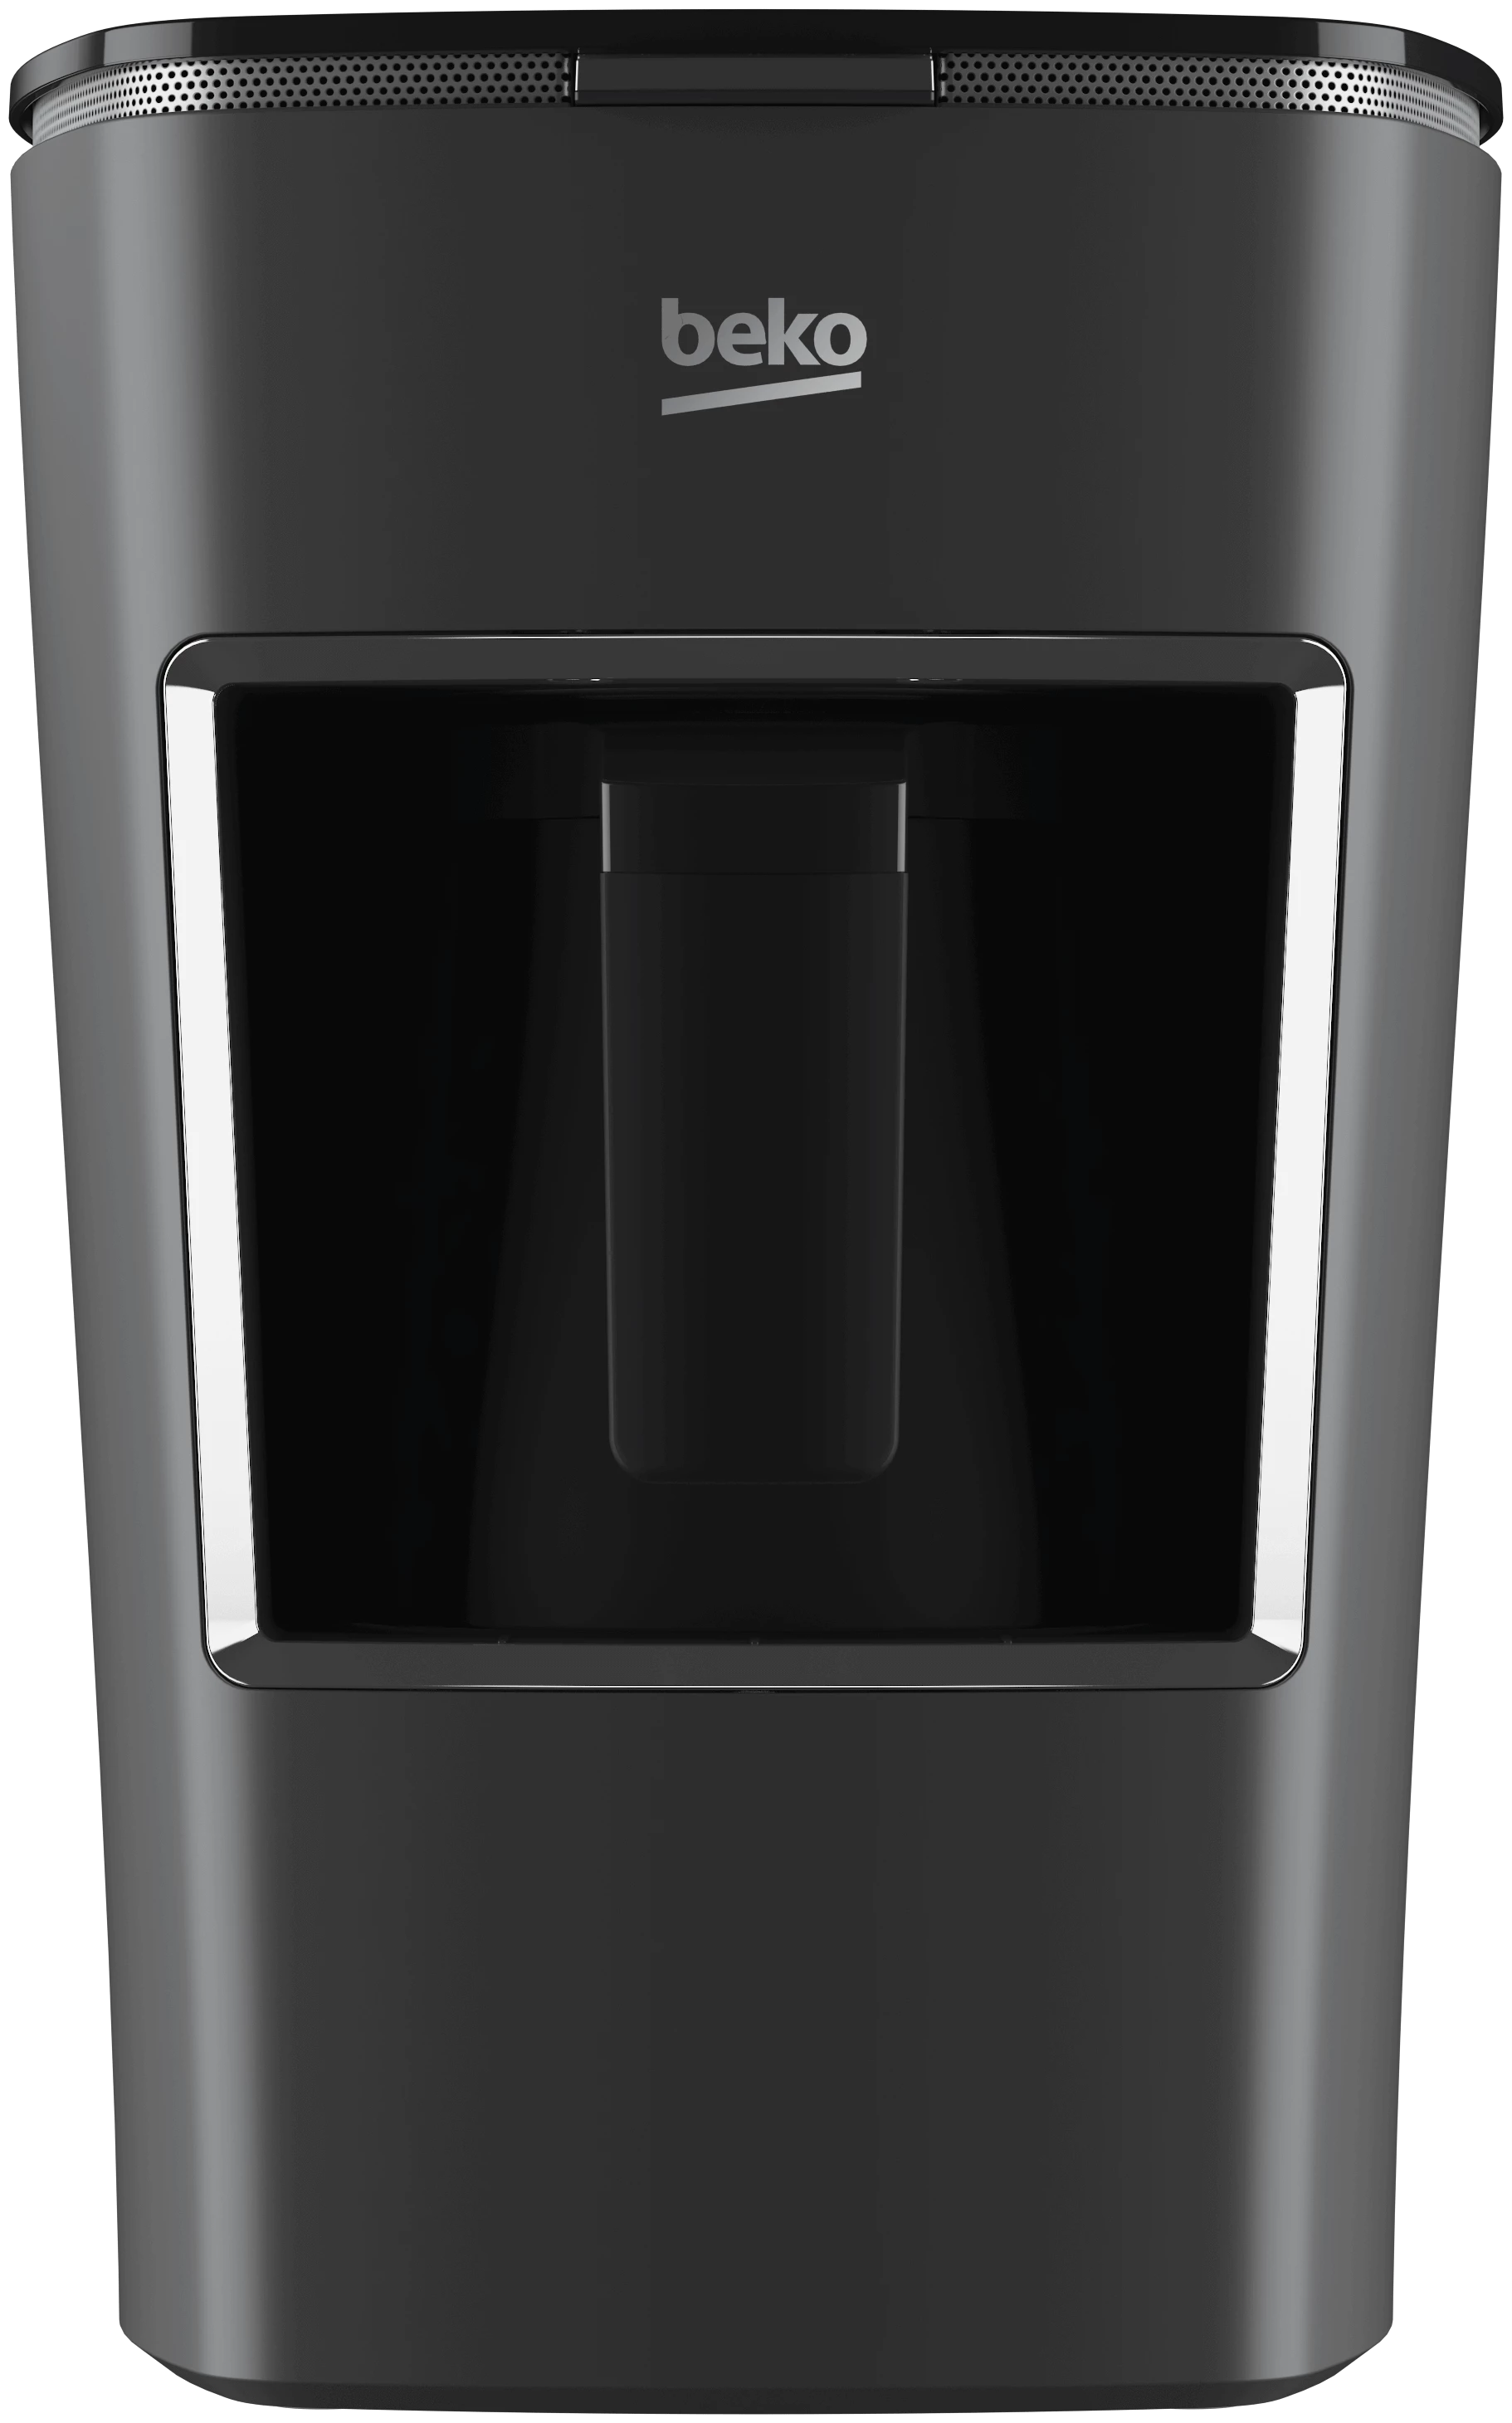 Beko Coffee Maker BKK-2300S | Coffee Maker | Other Appliances